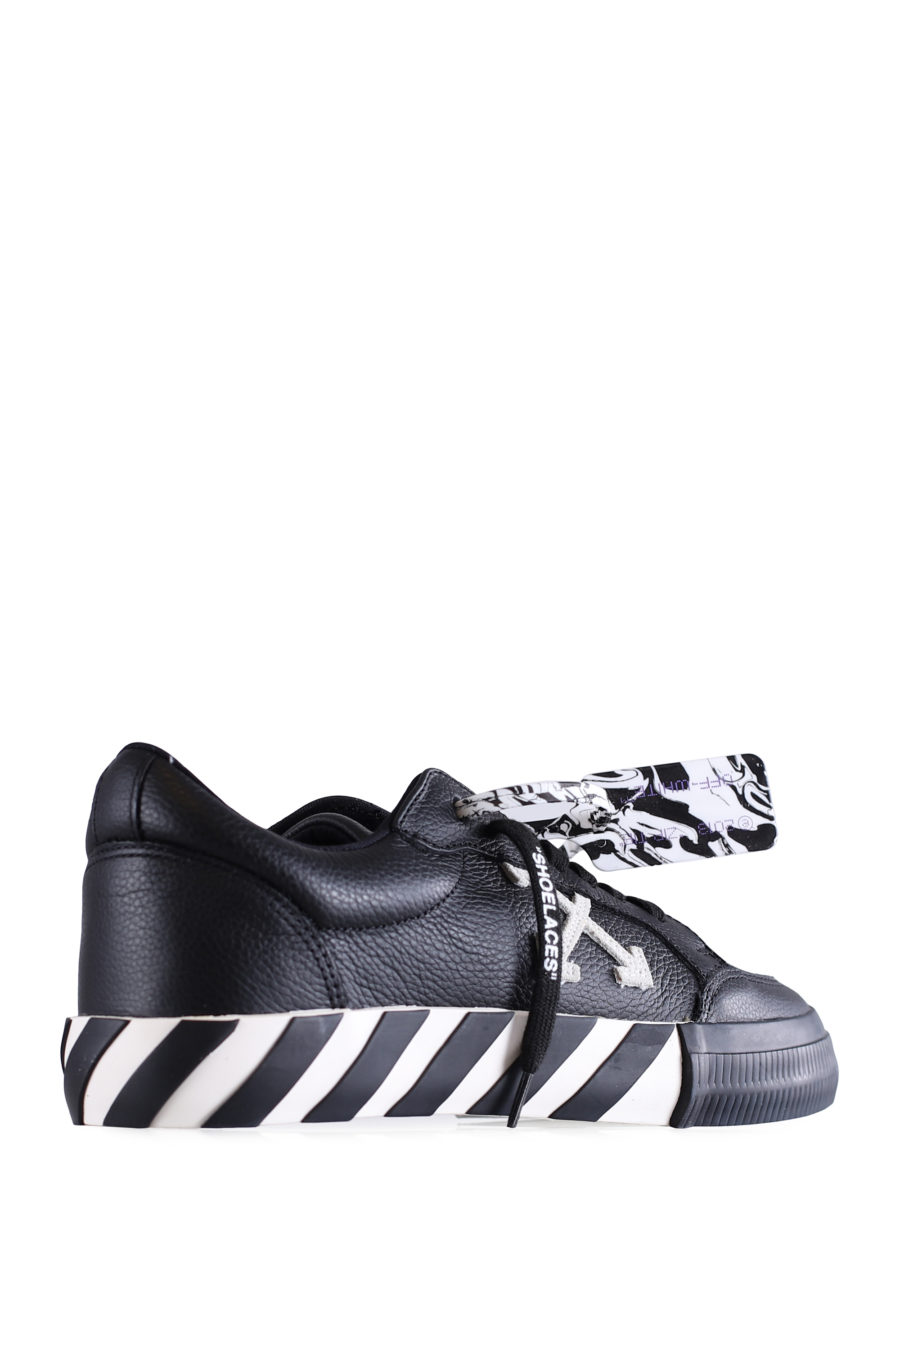 Zapatillas negras "Vulcanized" de cuero - IMG 0662